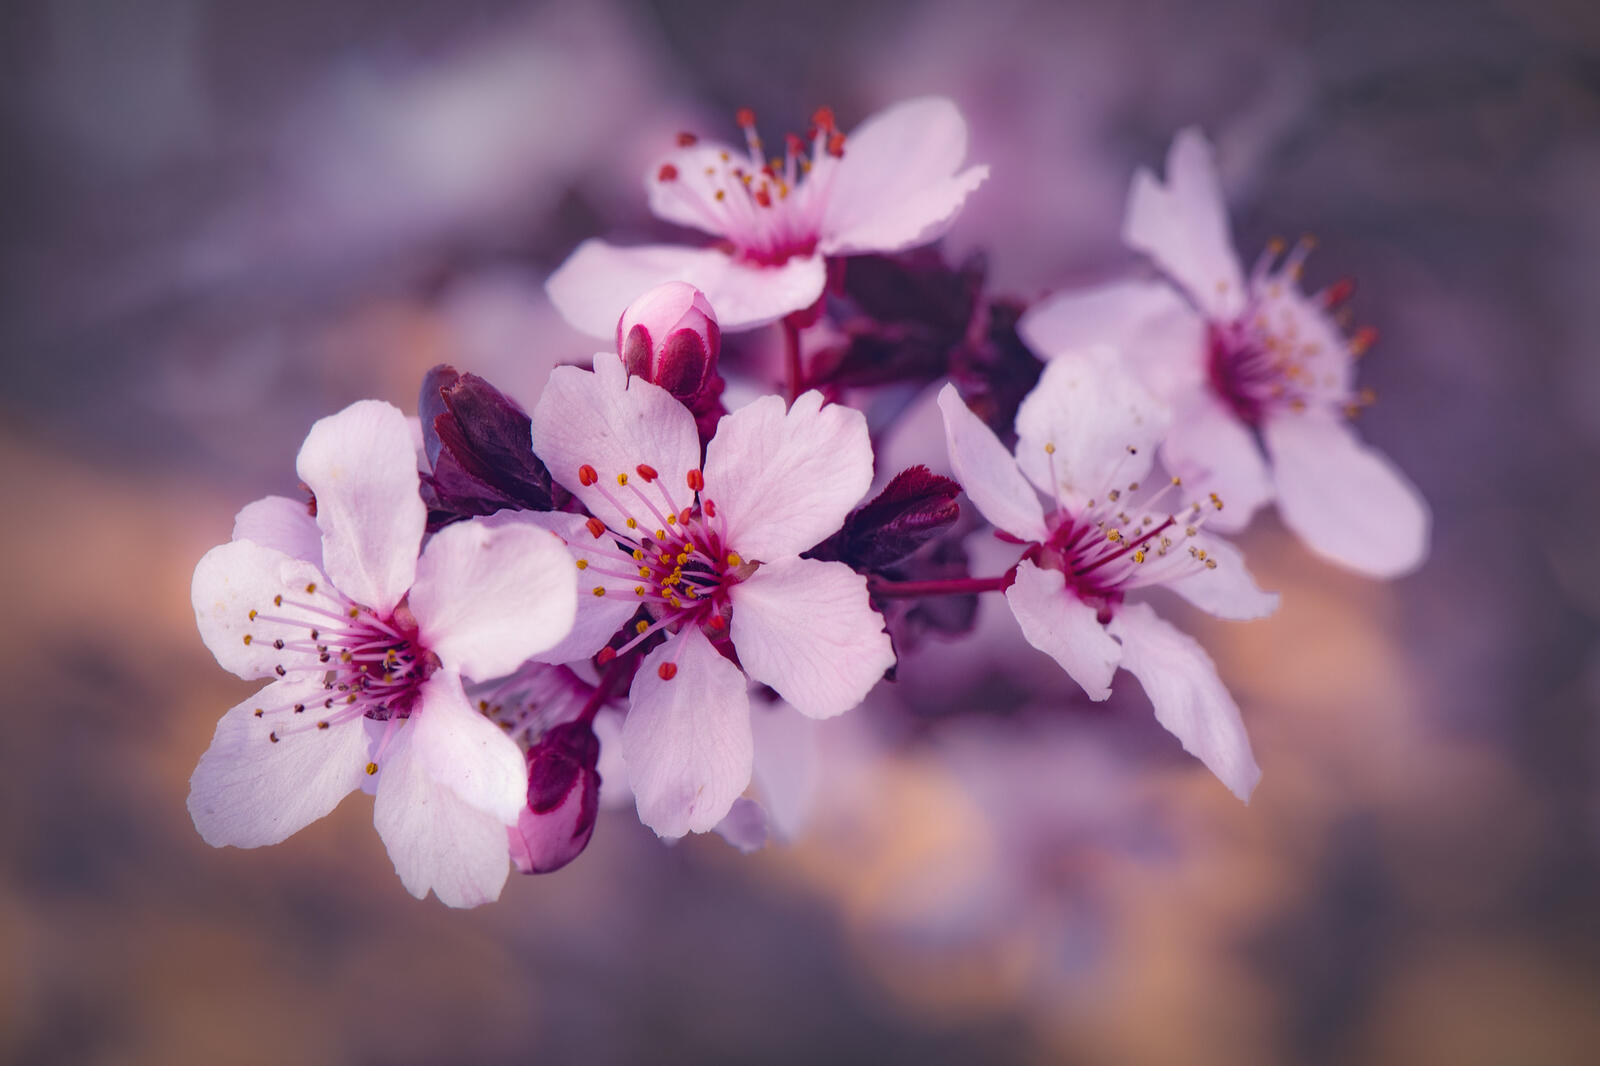 Обои ветка Cherry Blossoms весенняя природа на рабочий стол